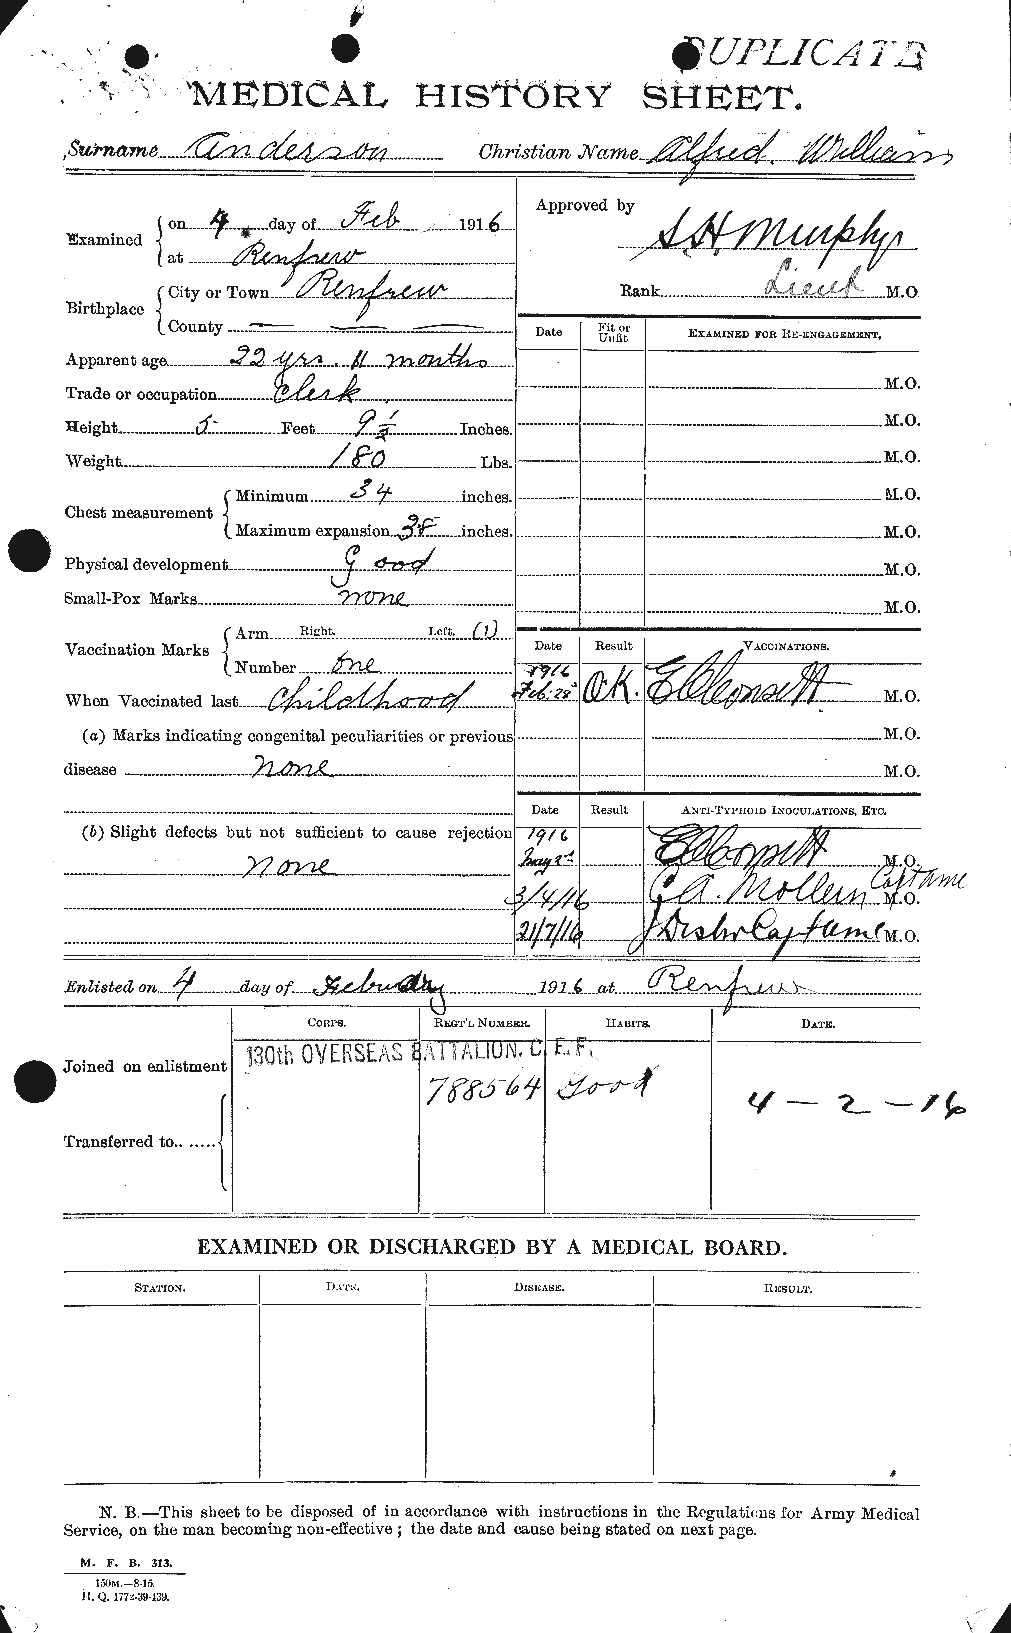 Dossiers du Personnel de la Première Guerre mondiale - CEC 209448a